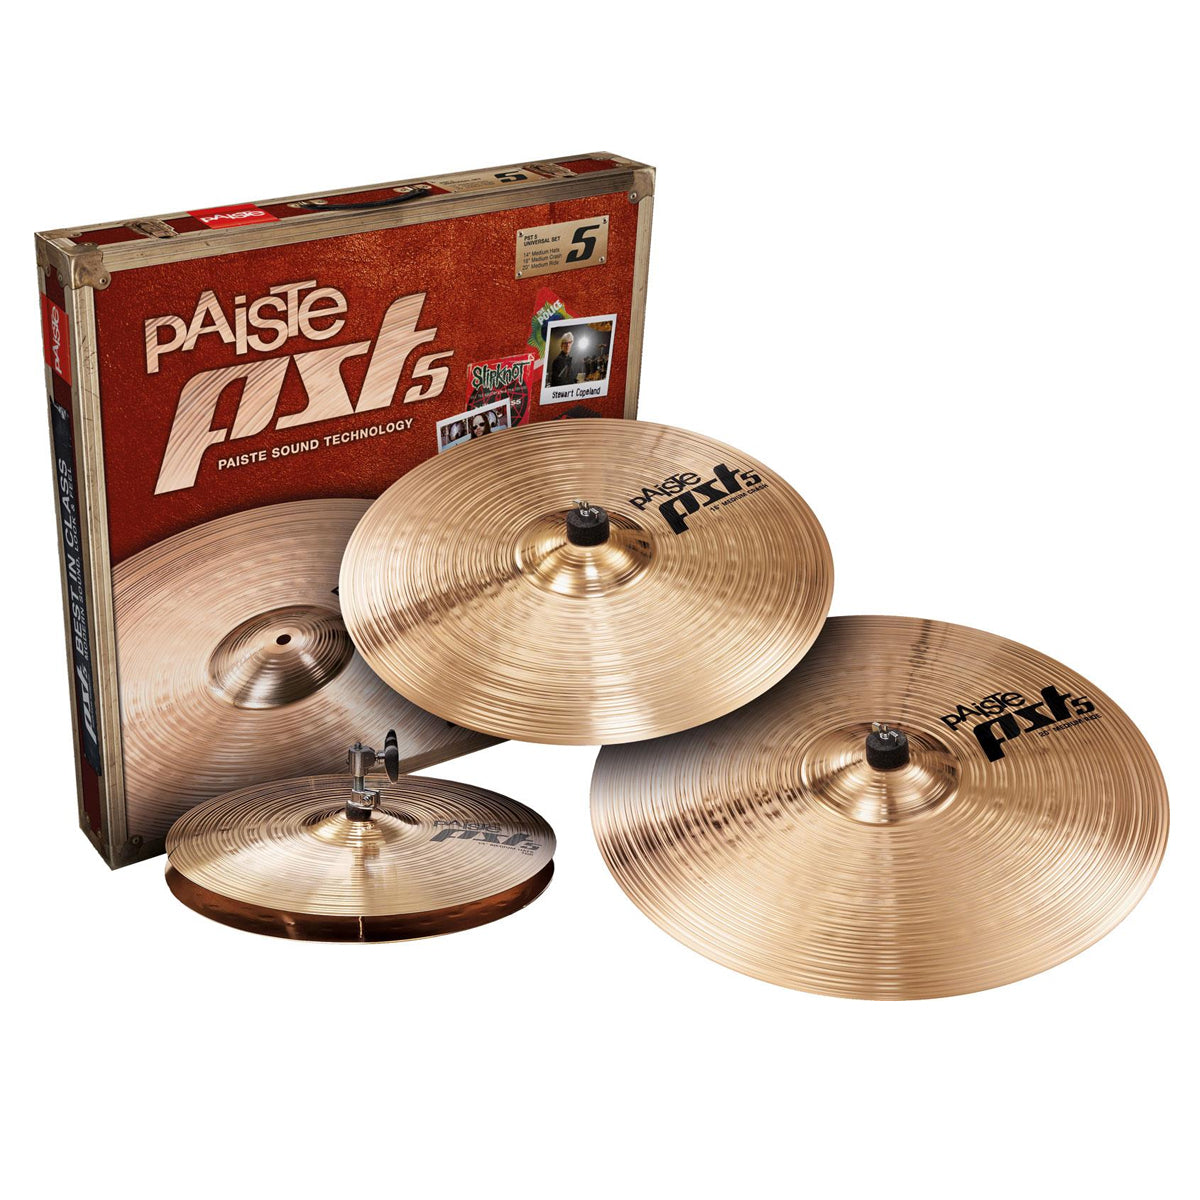 Paiste PST5 Universal Cymbal Set